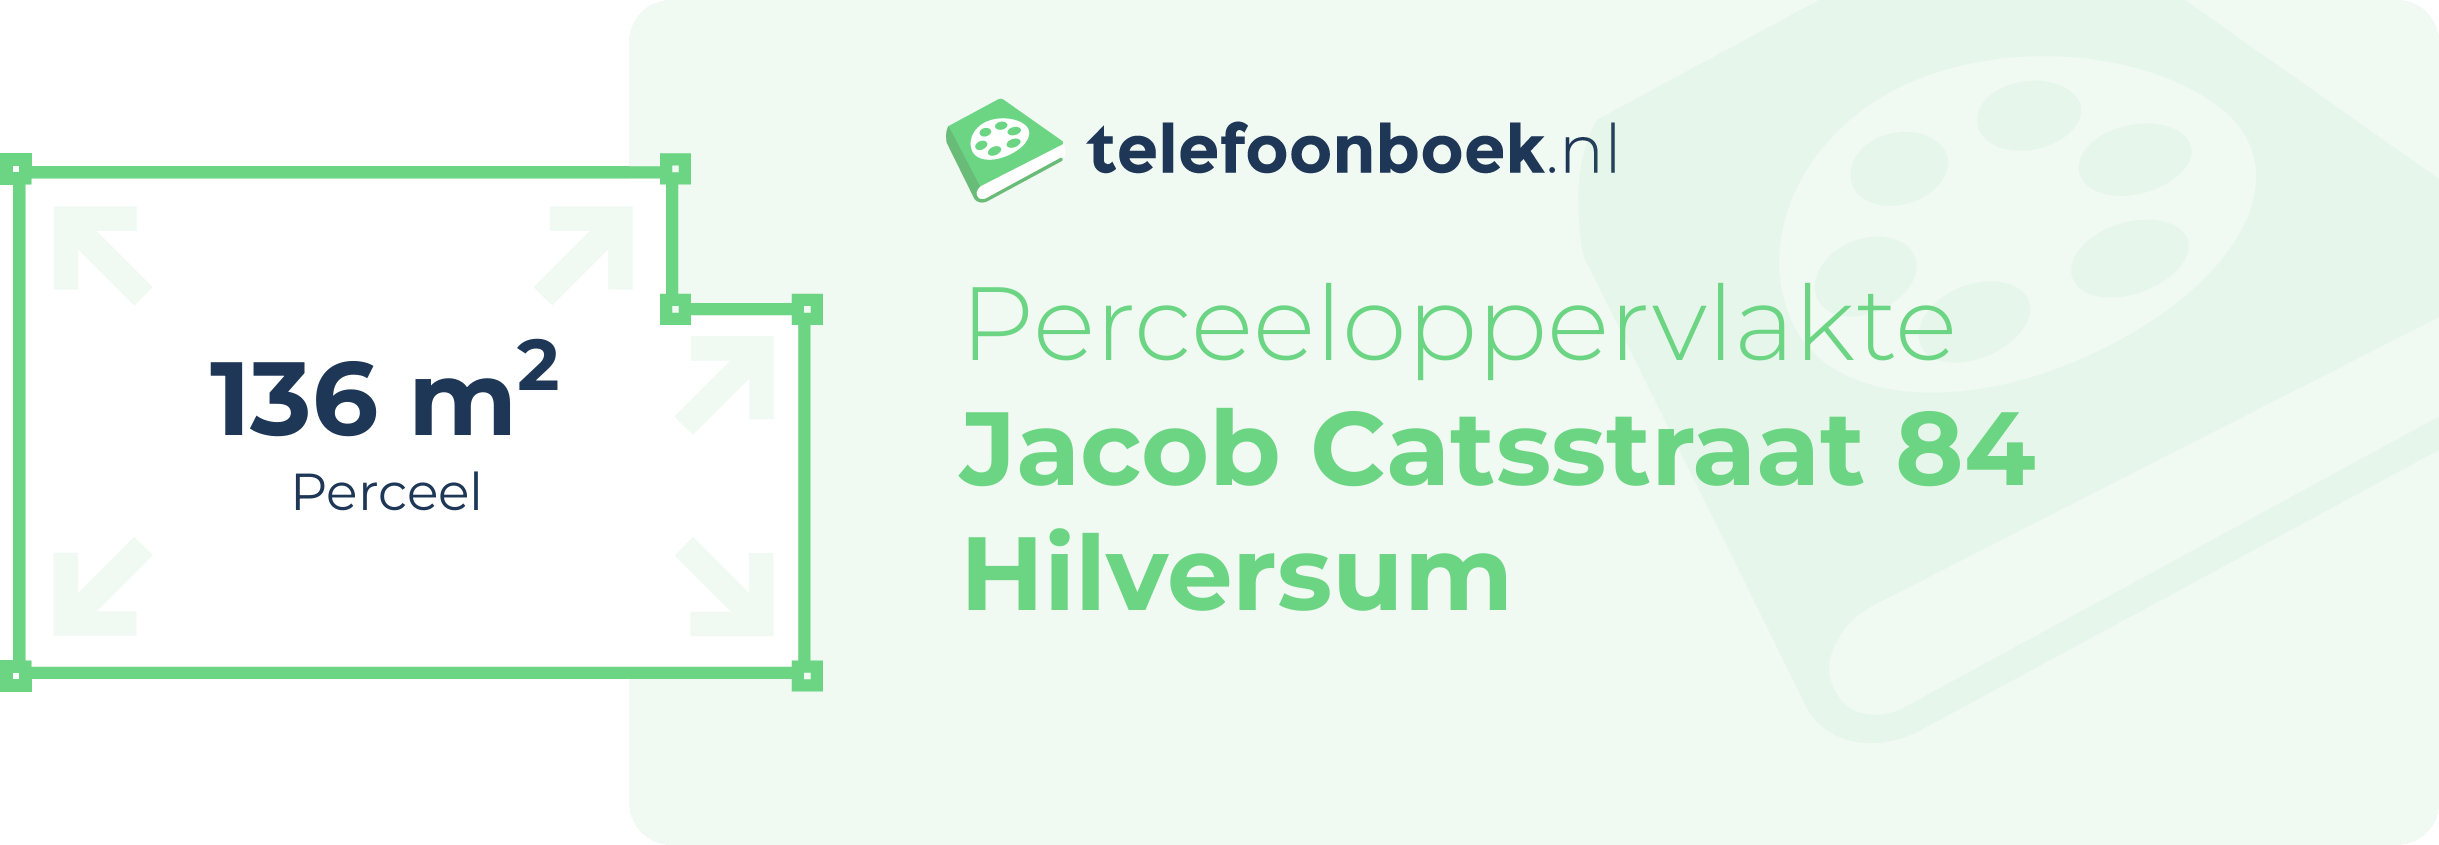 Perceeloppervlakte Jacob Catsstraat 84 Hilversum